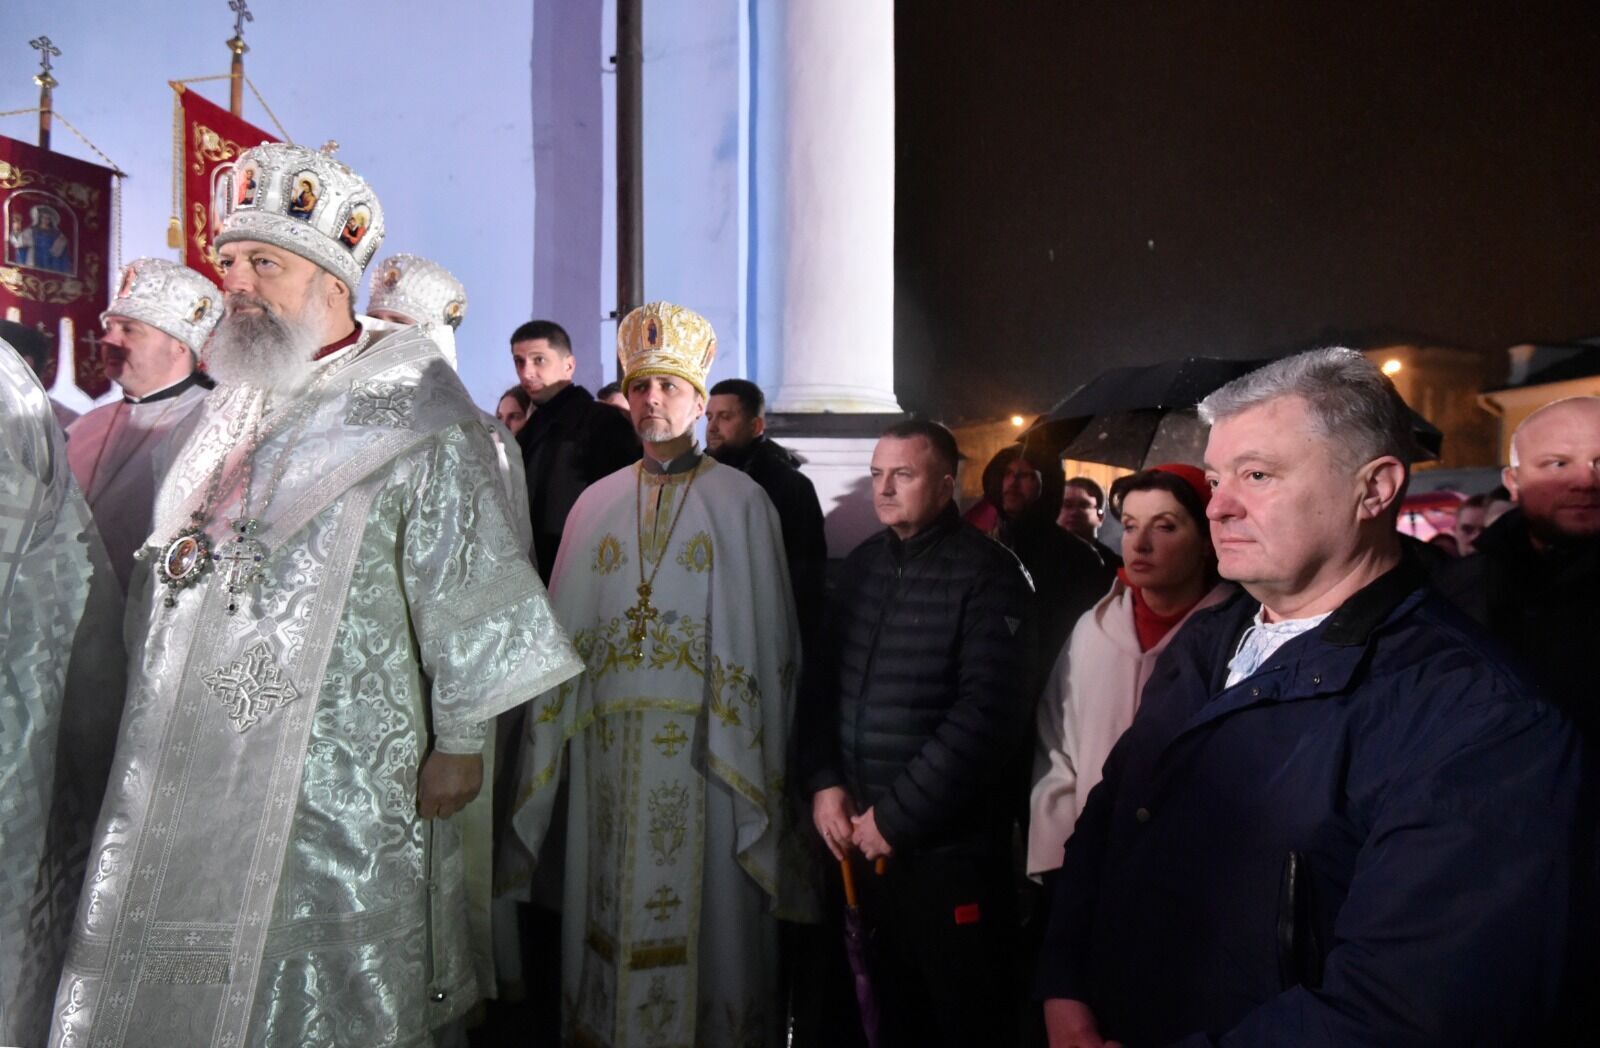 ПЦУ – это церковь миллионов украинцев и наша настоящая народная церковь, — Порошенко